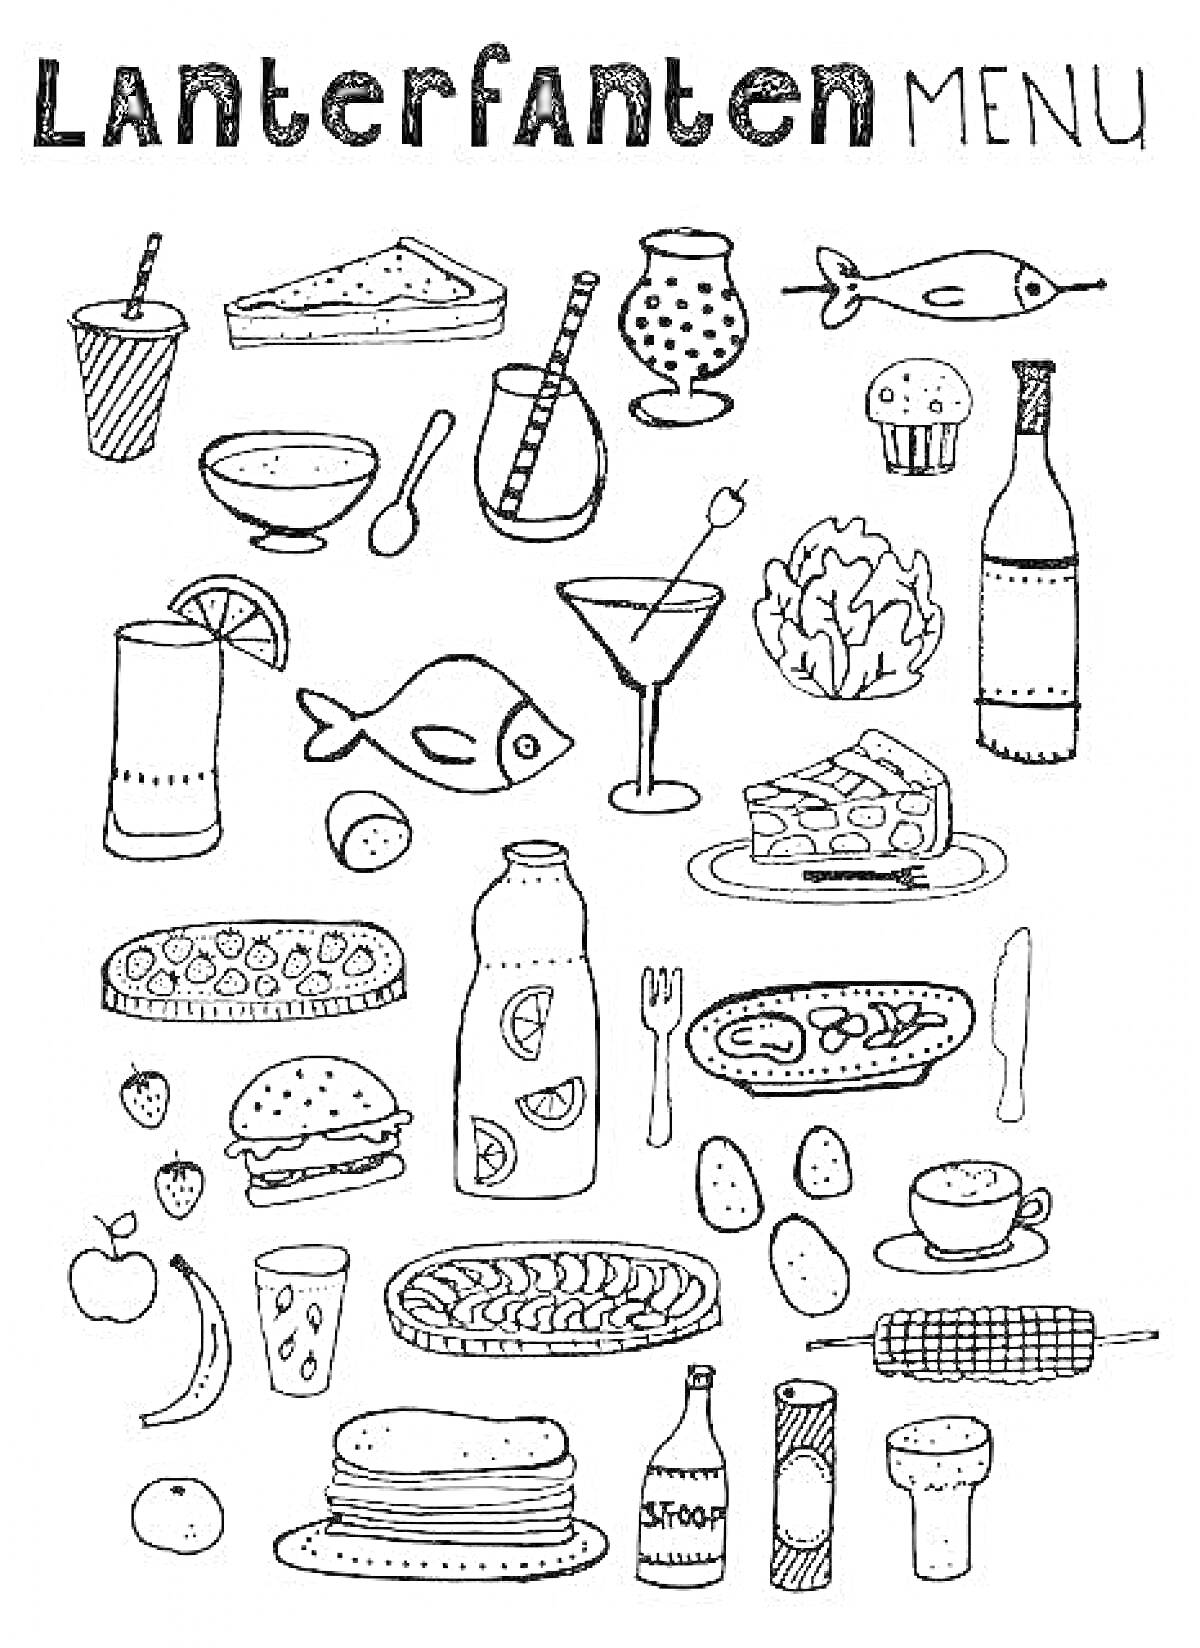 Раскраска меню с напитками, пиццей, тортом, мороженым, вином, рыбой, хот-догом, гамбургером, пиццей, фруктами и овощами, пирогом, стаканами, бокалами, бутылками и тарелками